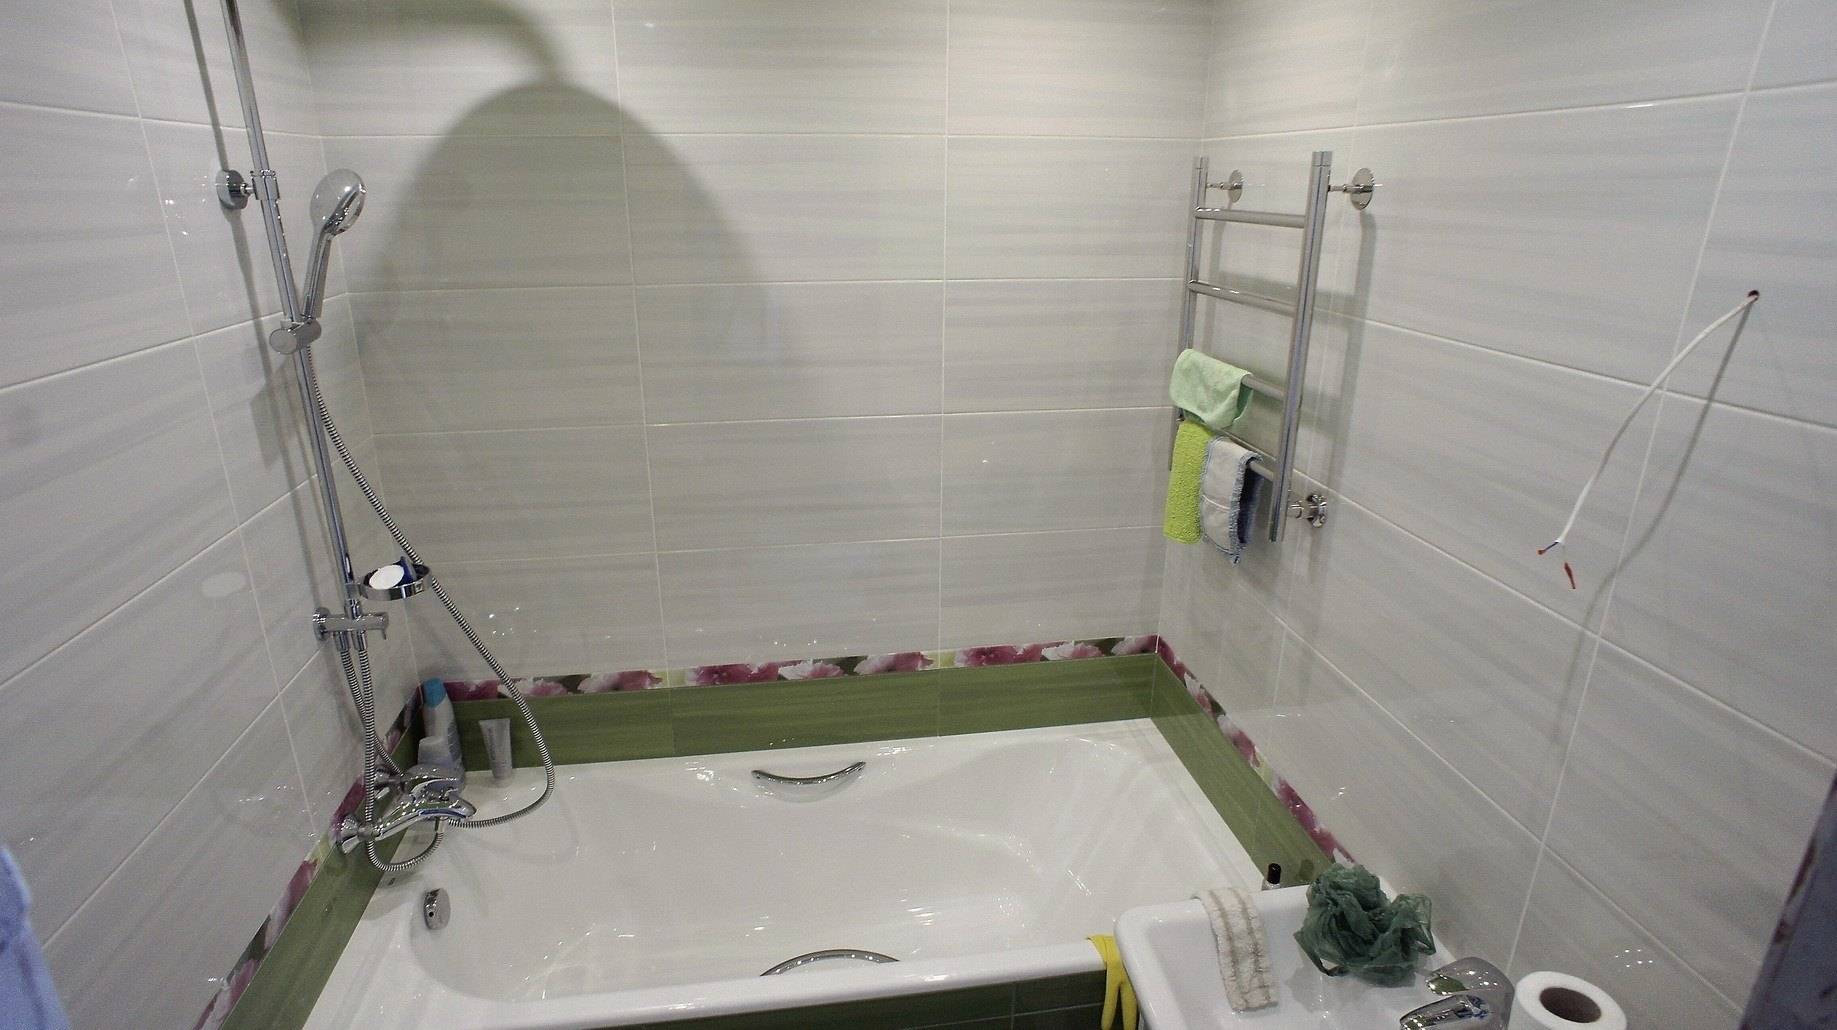 Ванная комната своими руками: как сделать самостоятельно стильную ванную (105 фото и видео)